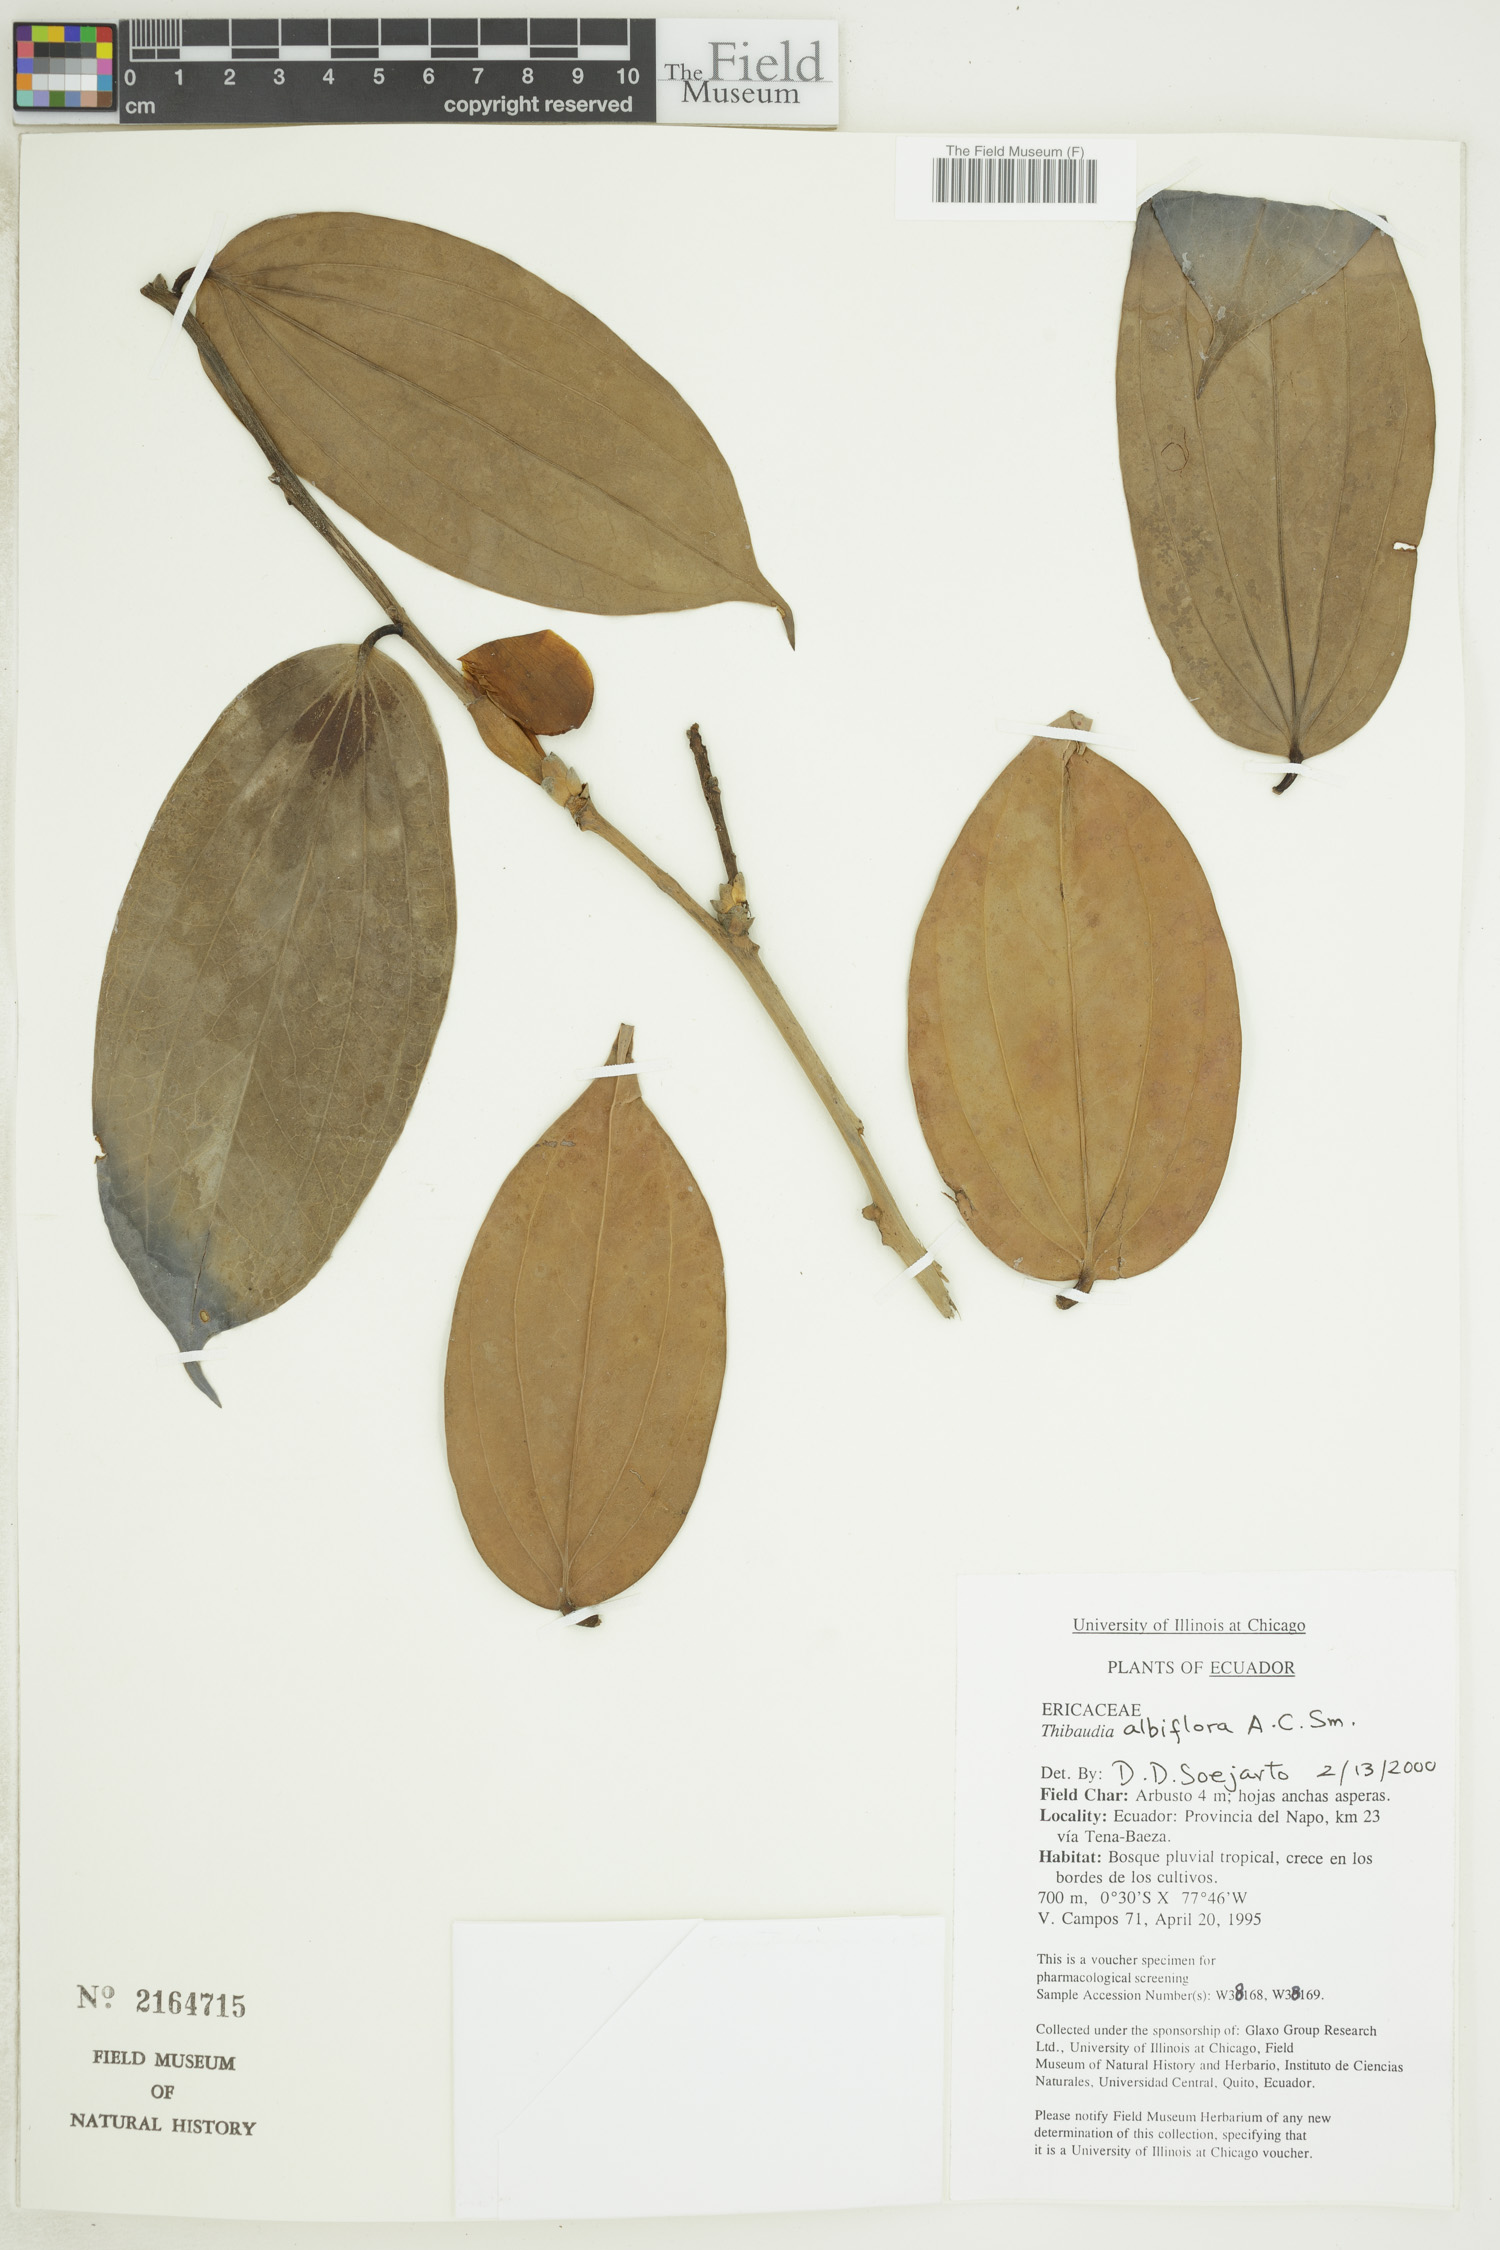 Thibaudia albiflora image